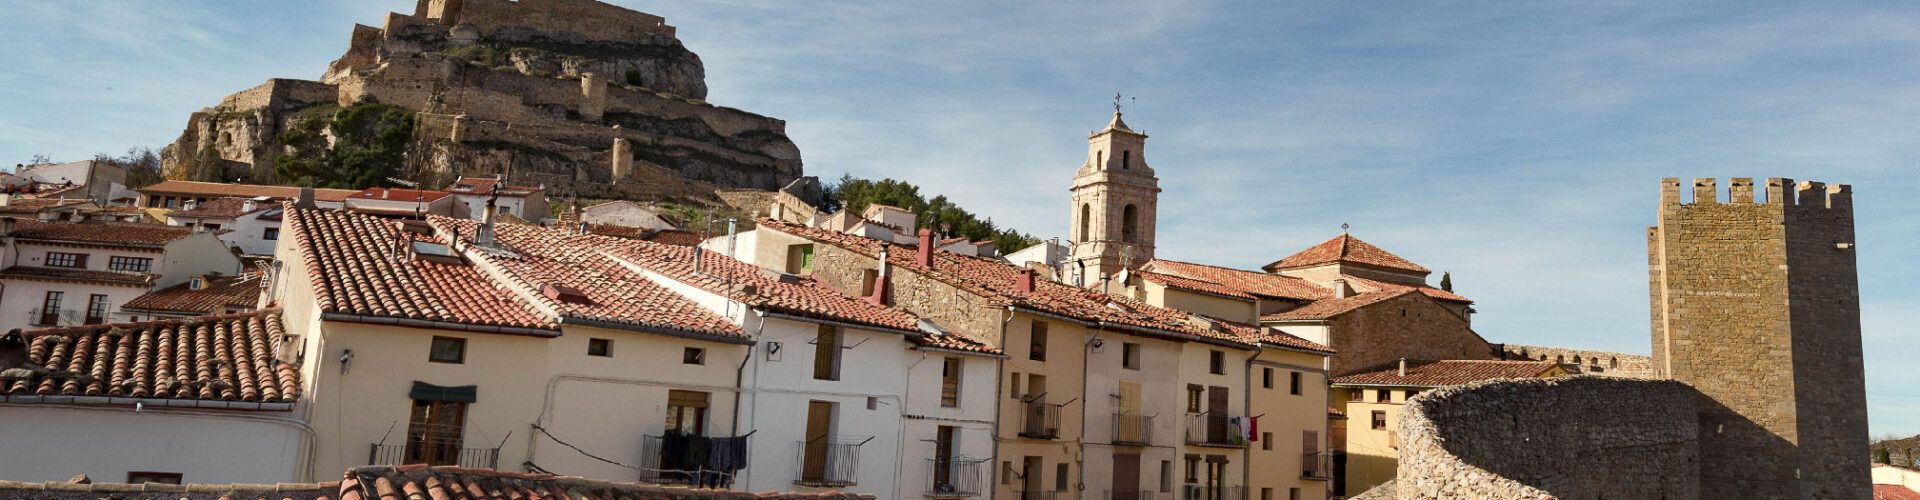 Morella ha estat escollida Destí Turístic Intel·ligent Nacional